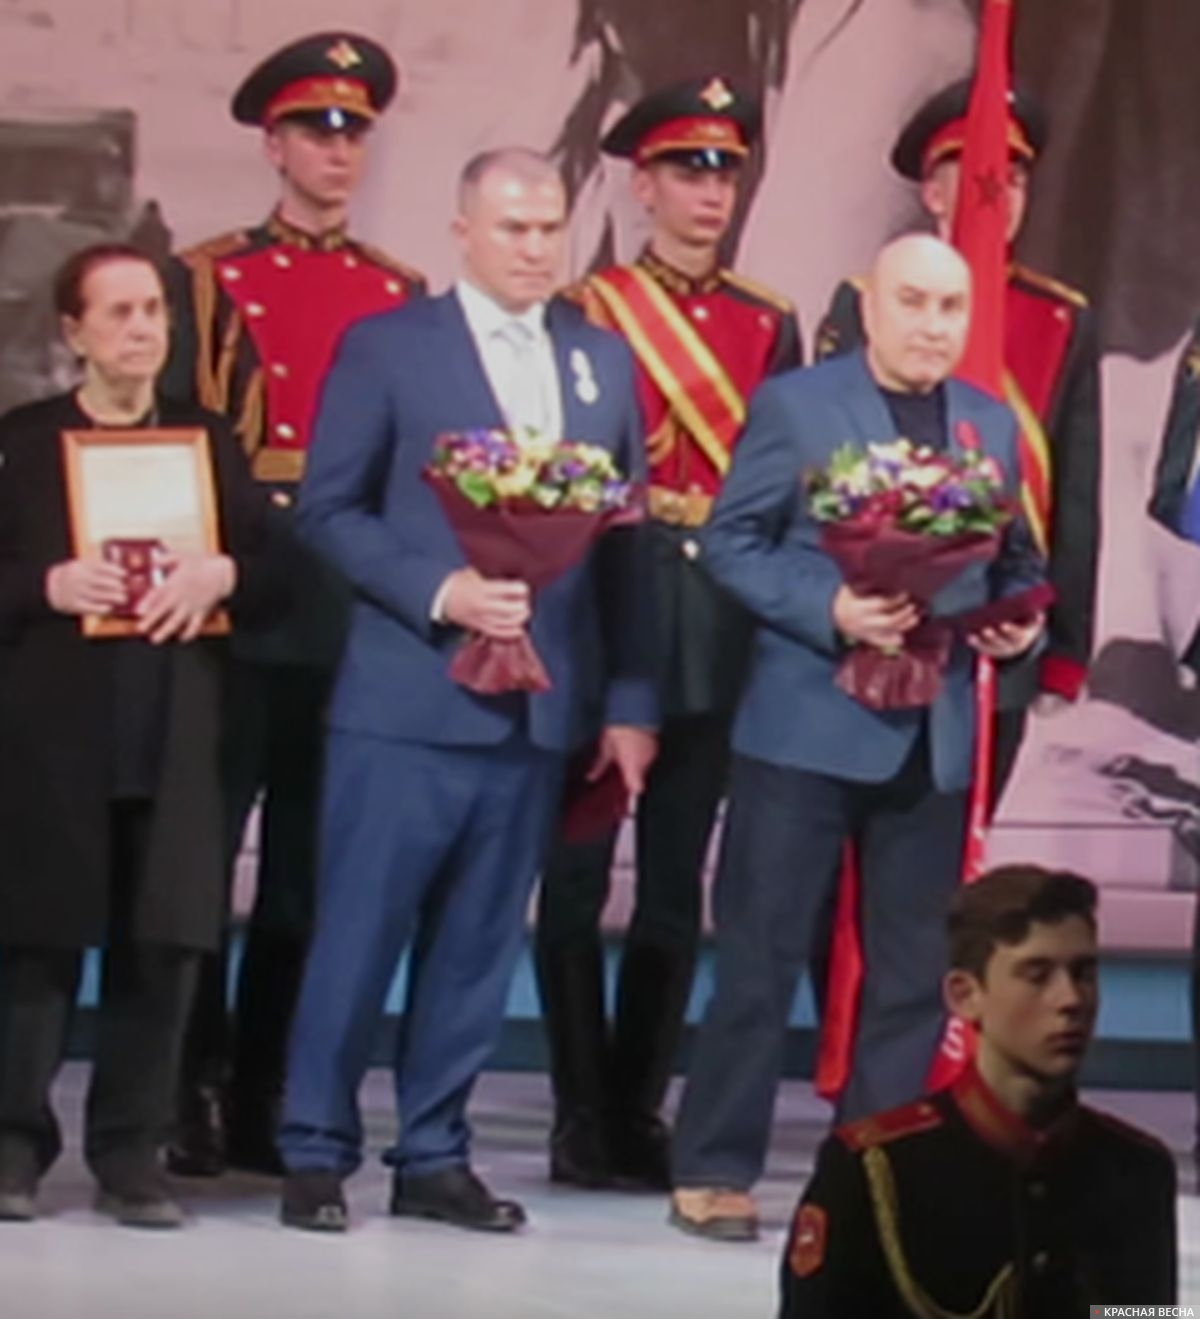 Вручение  наград, слева  Шелковой Александр, справа Соковенко Андрей